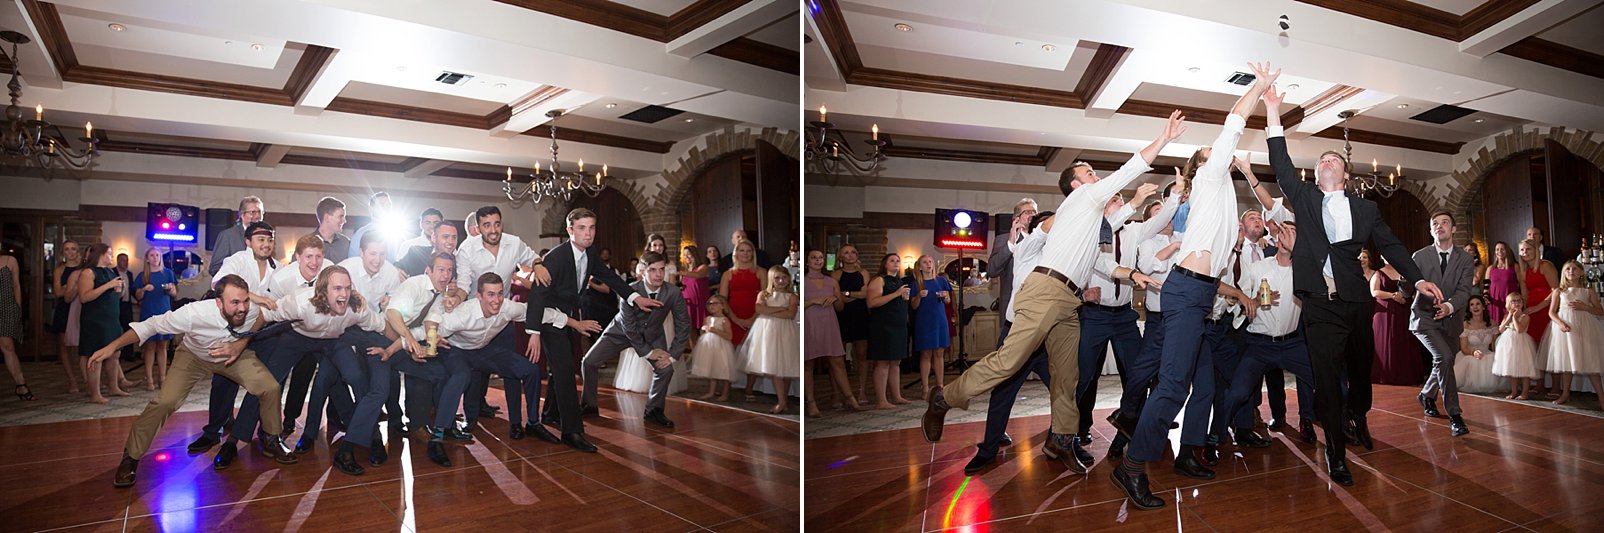 garter toss reception photography during denver wedding